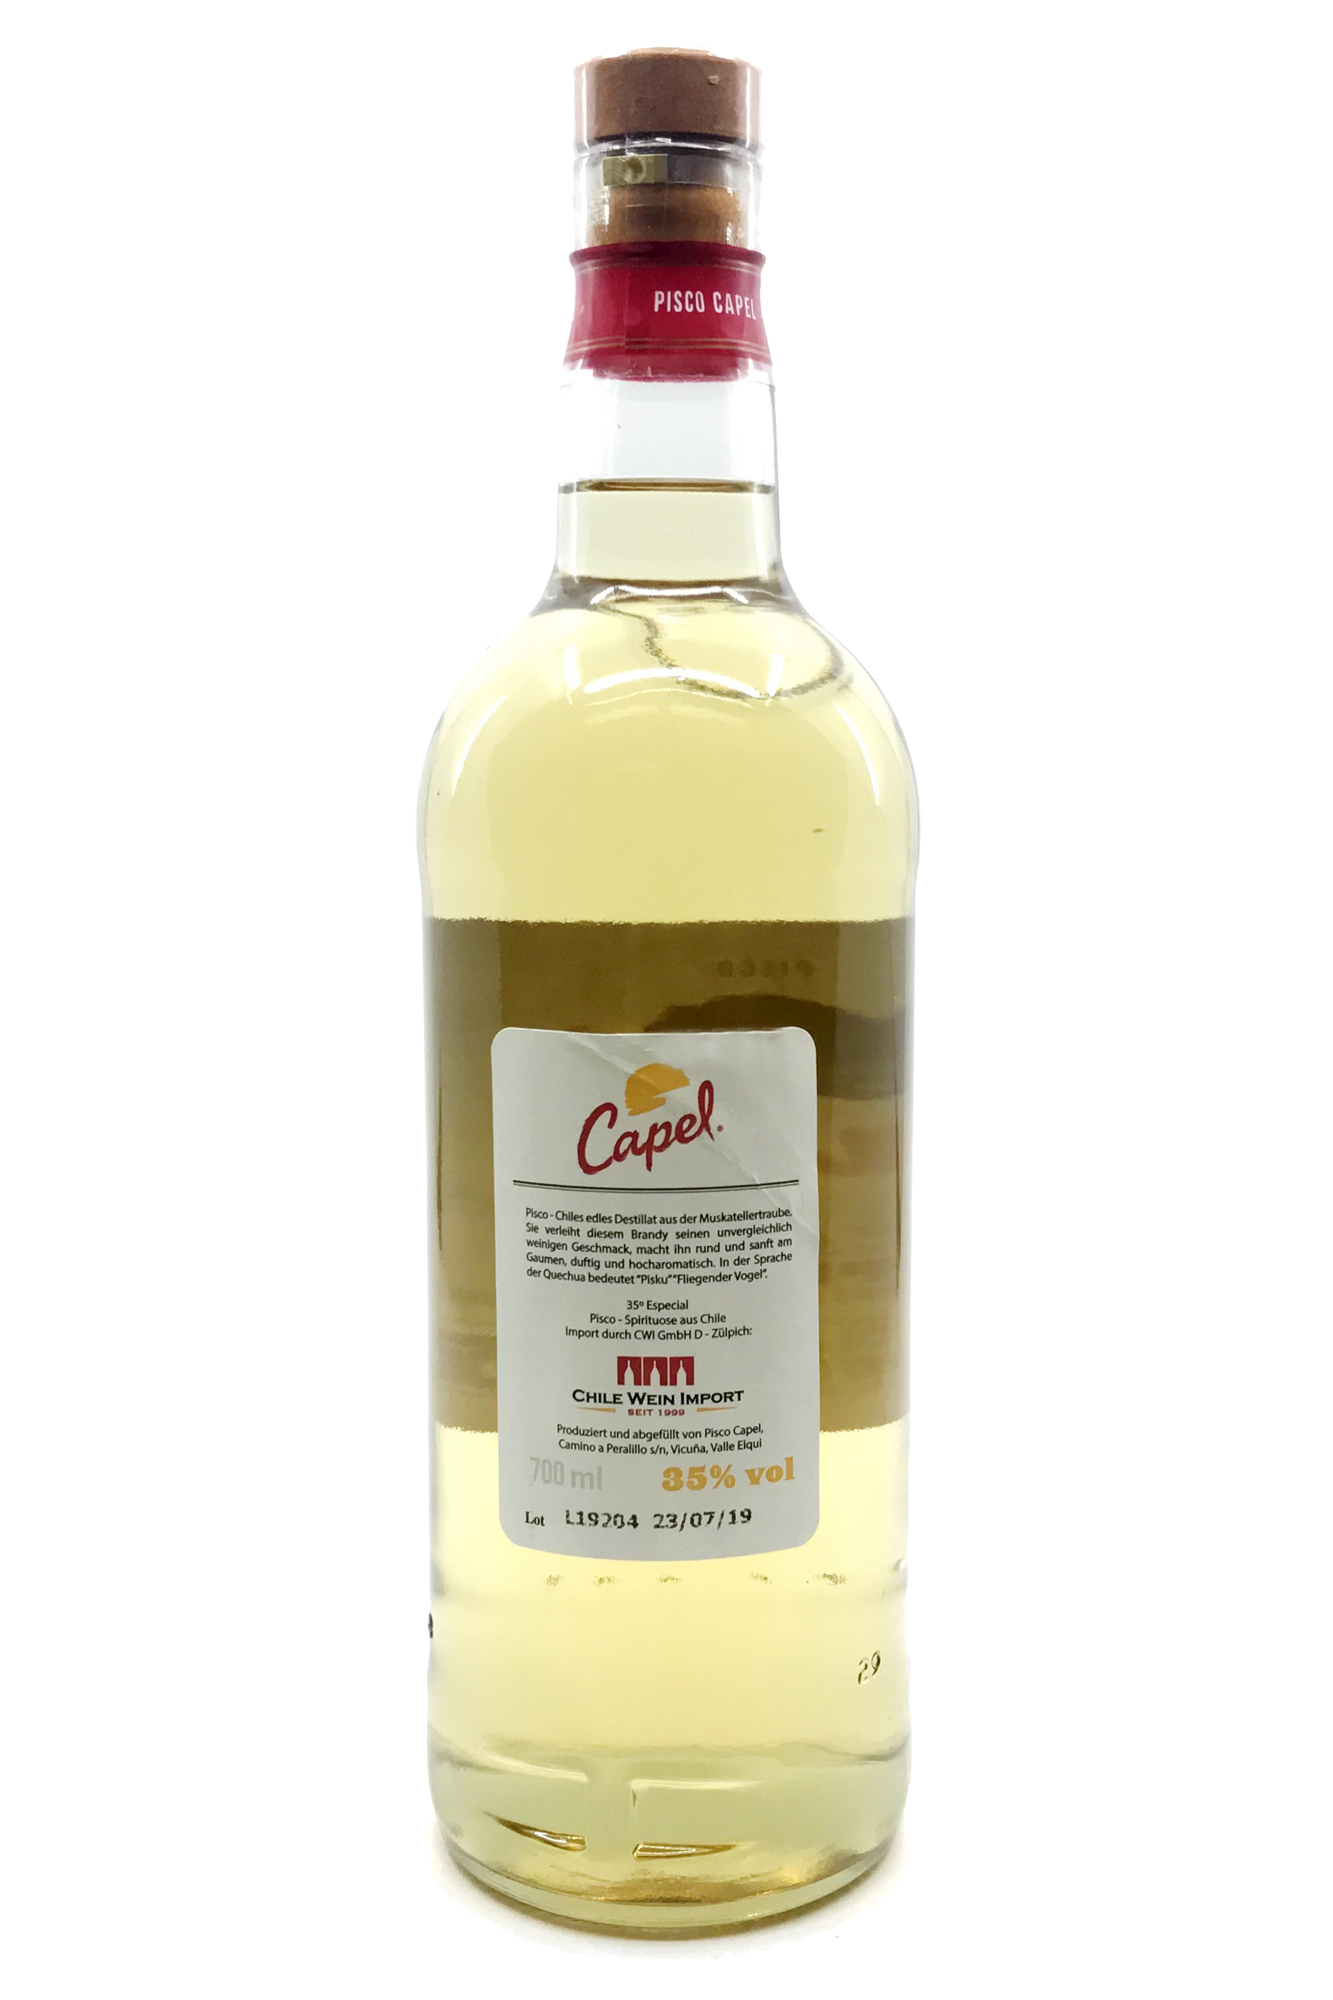 Capel Pisco Especial Doble Destilado - 0,7l -  35% vol. Alk. - Back